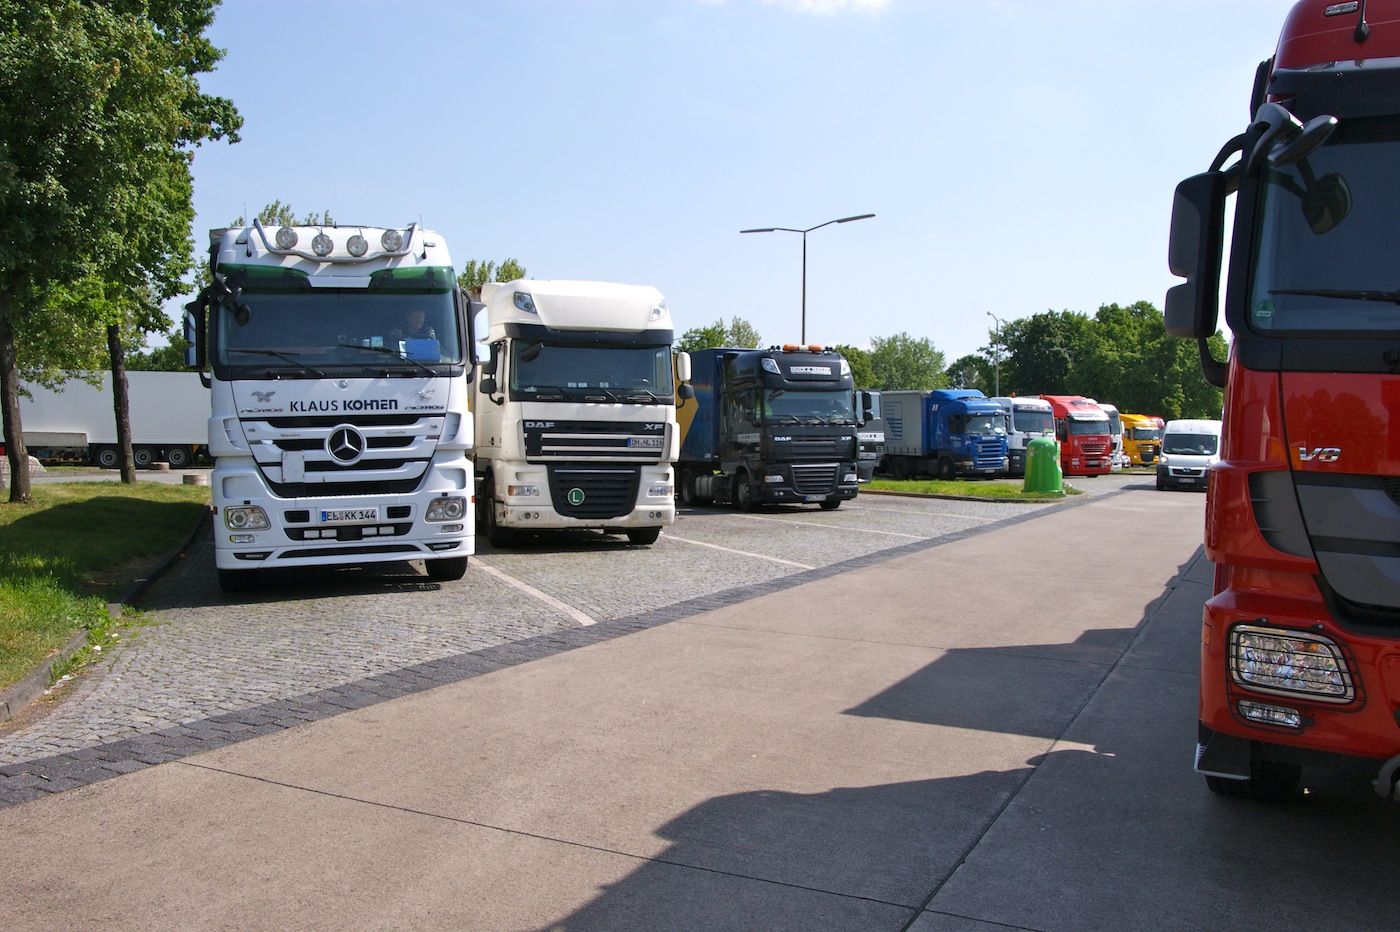 Camiones aparcados en un área de servicio en Alemania.